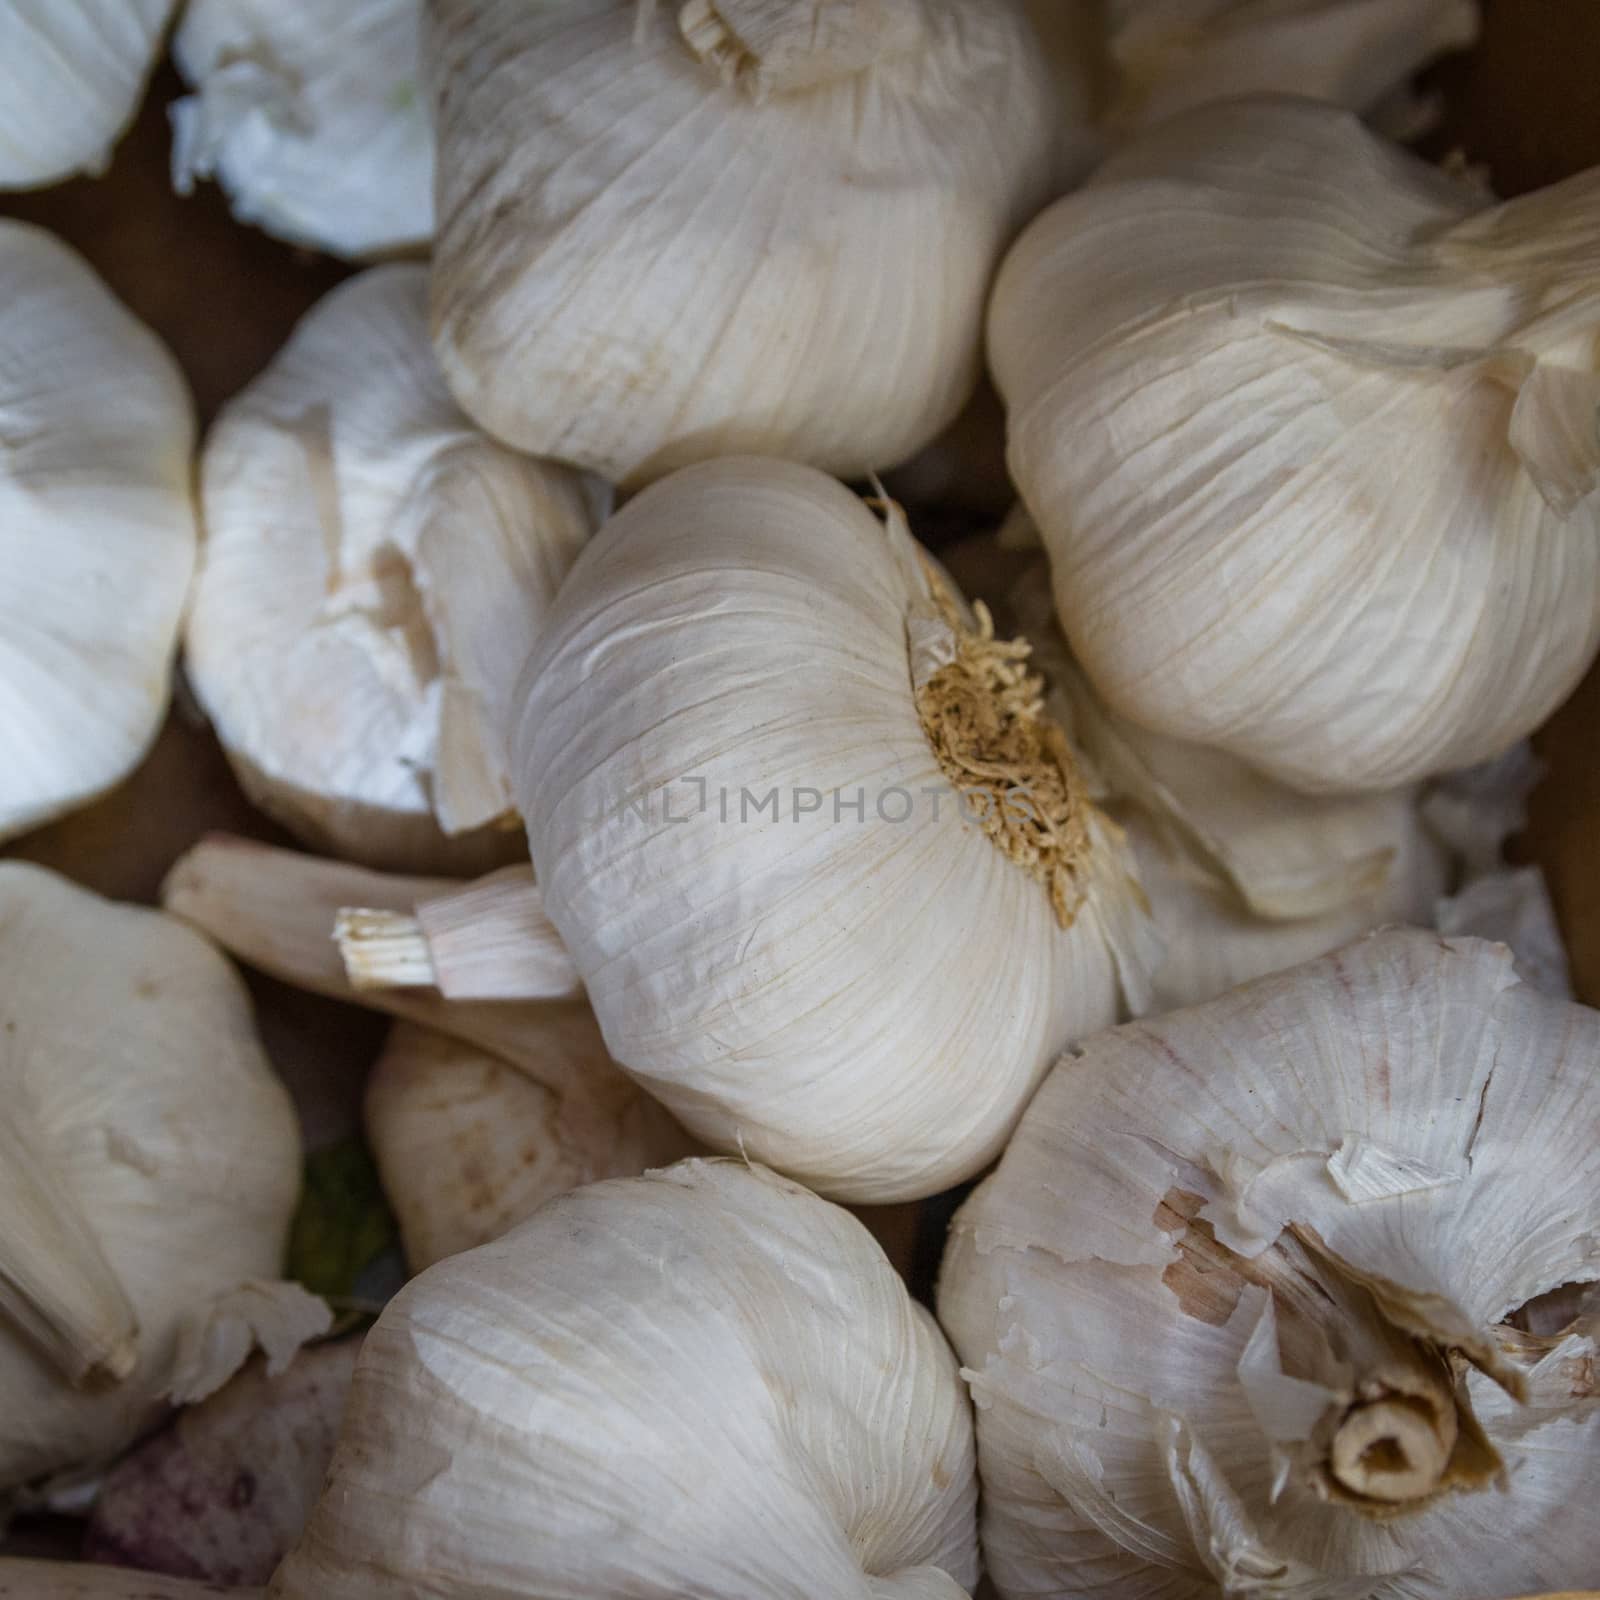 the garlic by goghy73